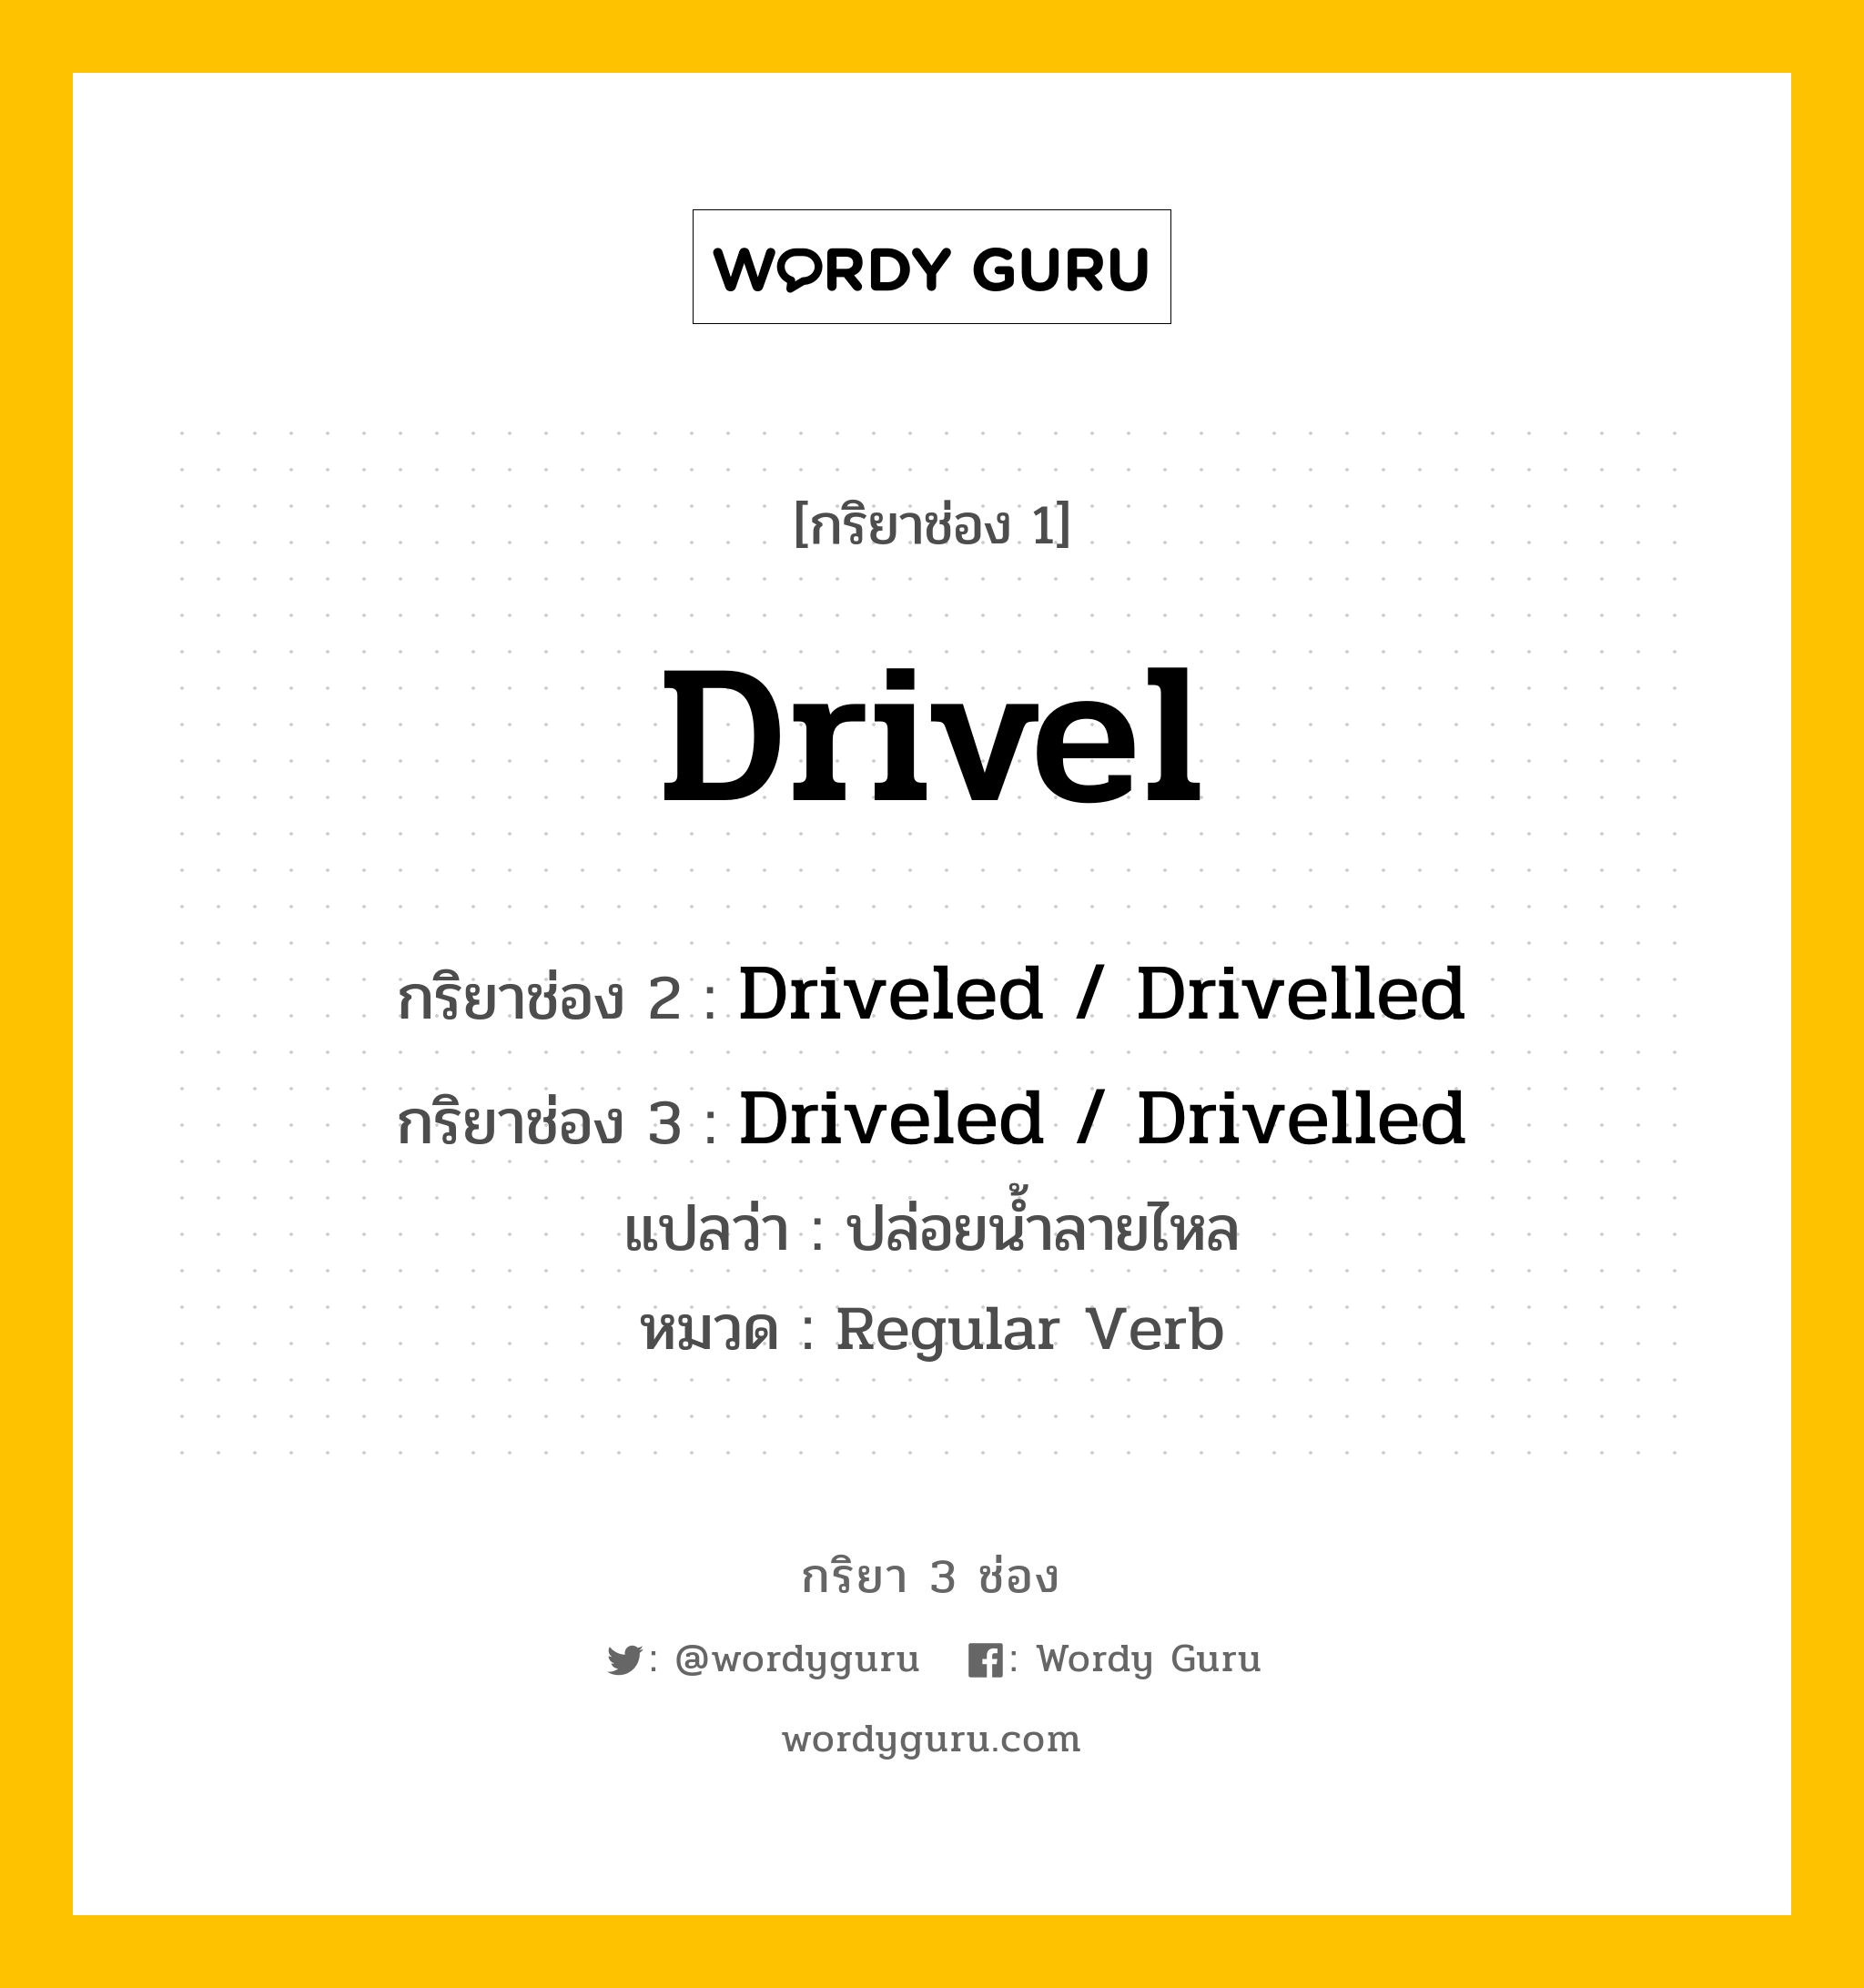 กริยา 3 ช่อง ของ Drivel คืออะไร? มาดูคำอ่าน คำแปลกันเลย, กริยาช่อง 1 Drivel กริยาช่อง 2 Driveled / Drivelled กริยาช่อง 3 Driveled / Drivelled แปลว่า ปล่อยน้ำลายไหล หมวด Regular Verb หมวด Regular Verb